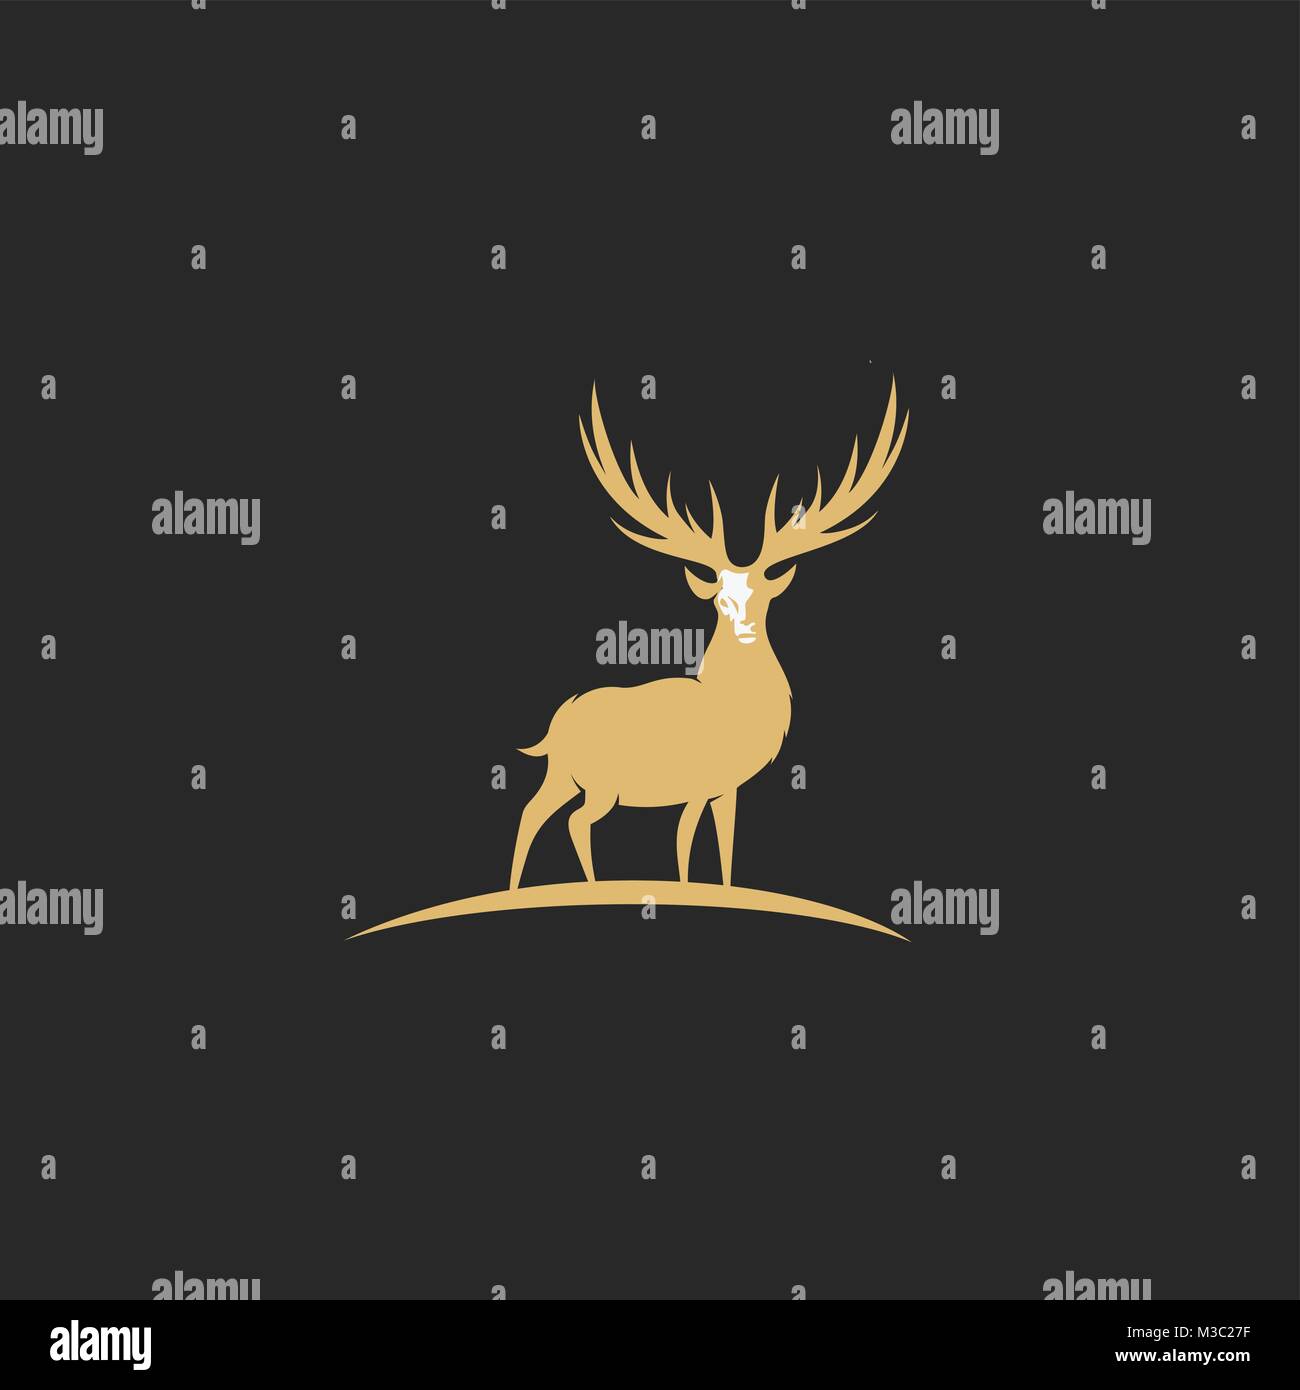 minimal logo of golden deer vector illustration. Stock Vector